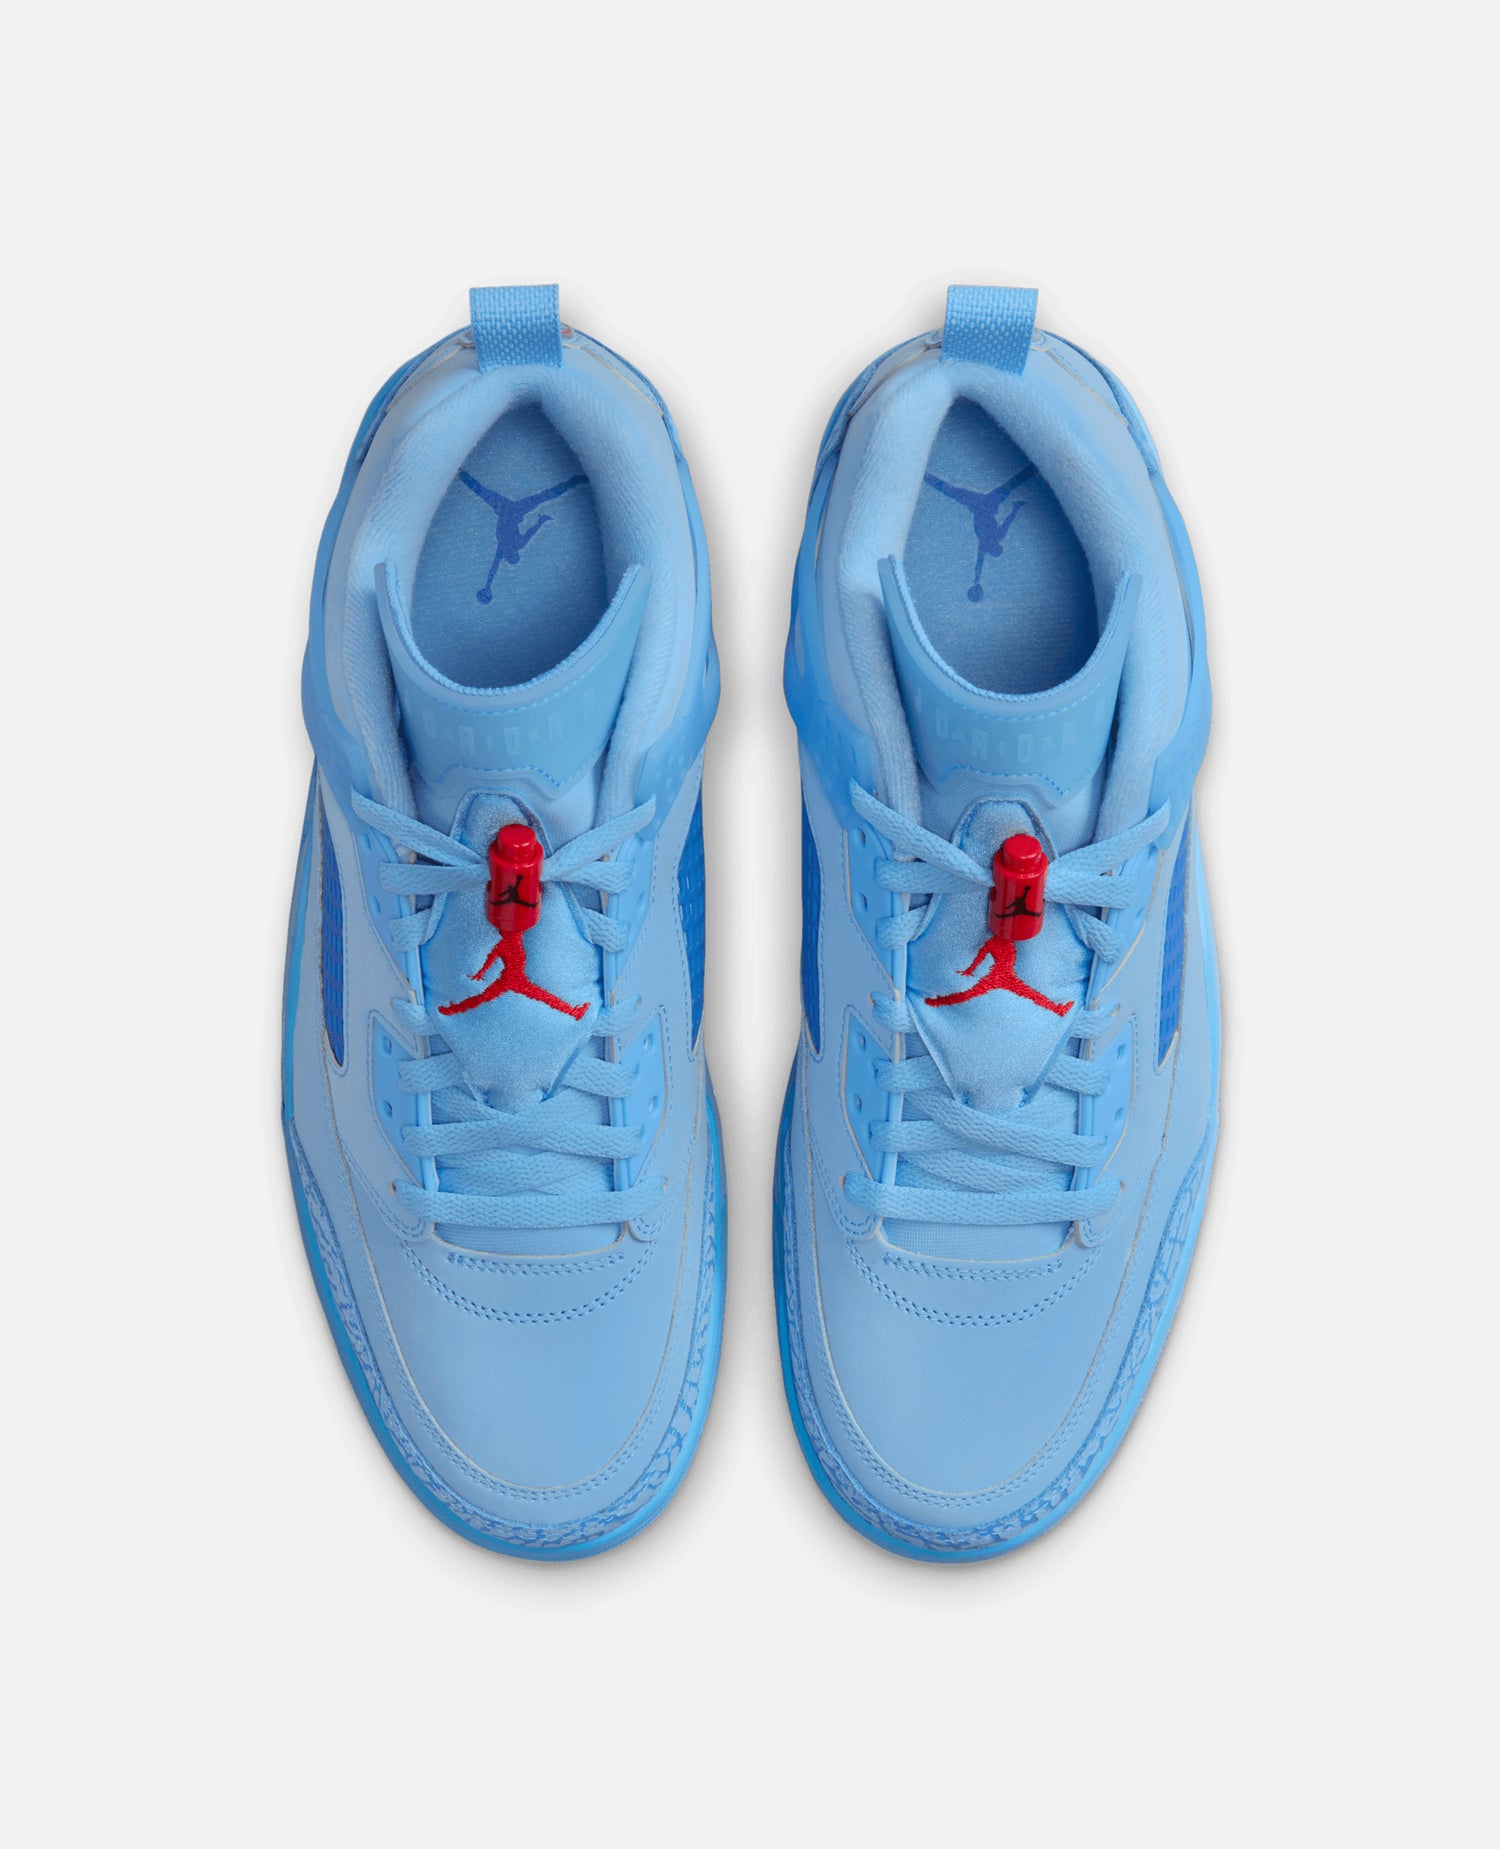 Nike Jordan Spizike Low (Football Blue/Fountain Blue)